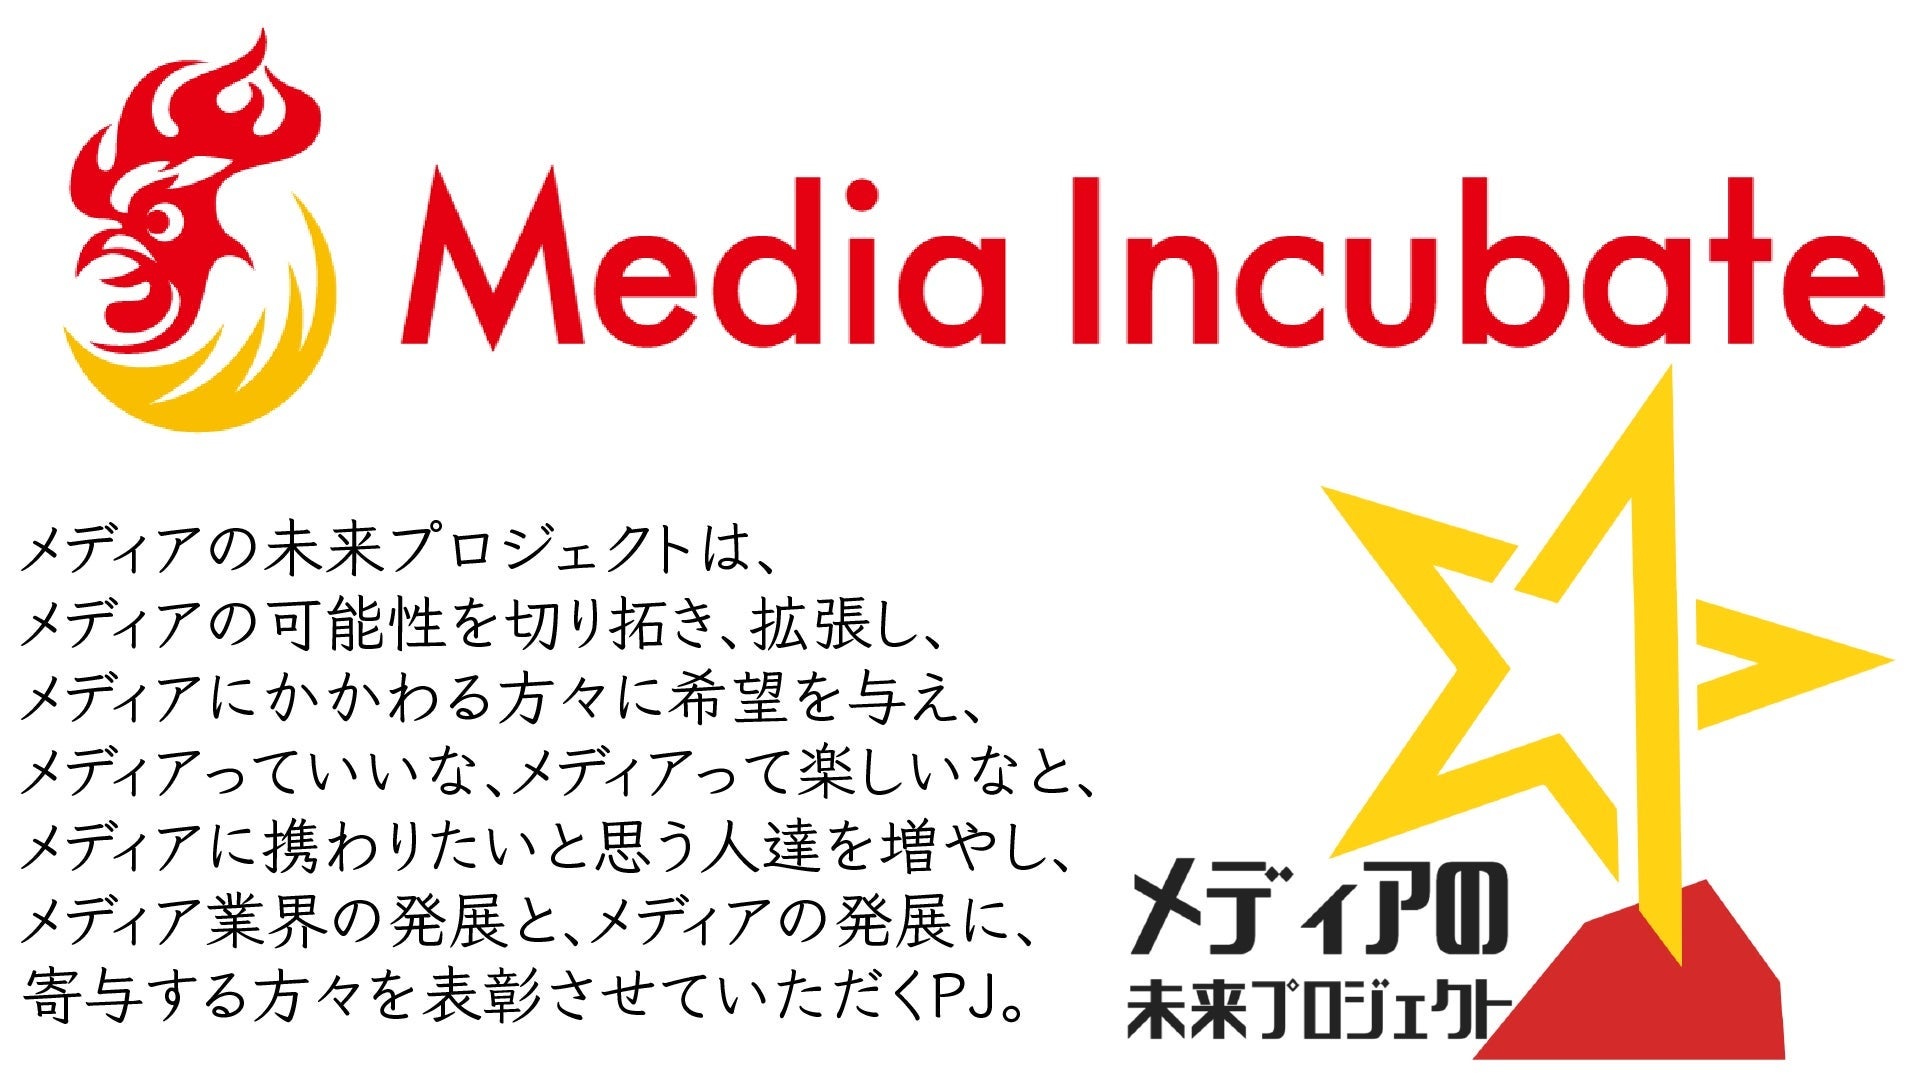 【2022年3月のメディアの未来プロジェクト】東京都実験区下北沢、ganas、THE RHETORIC STAR、DEPACO、Probikeshop、STARTUP Pitch Media、アプセル